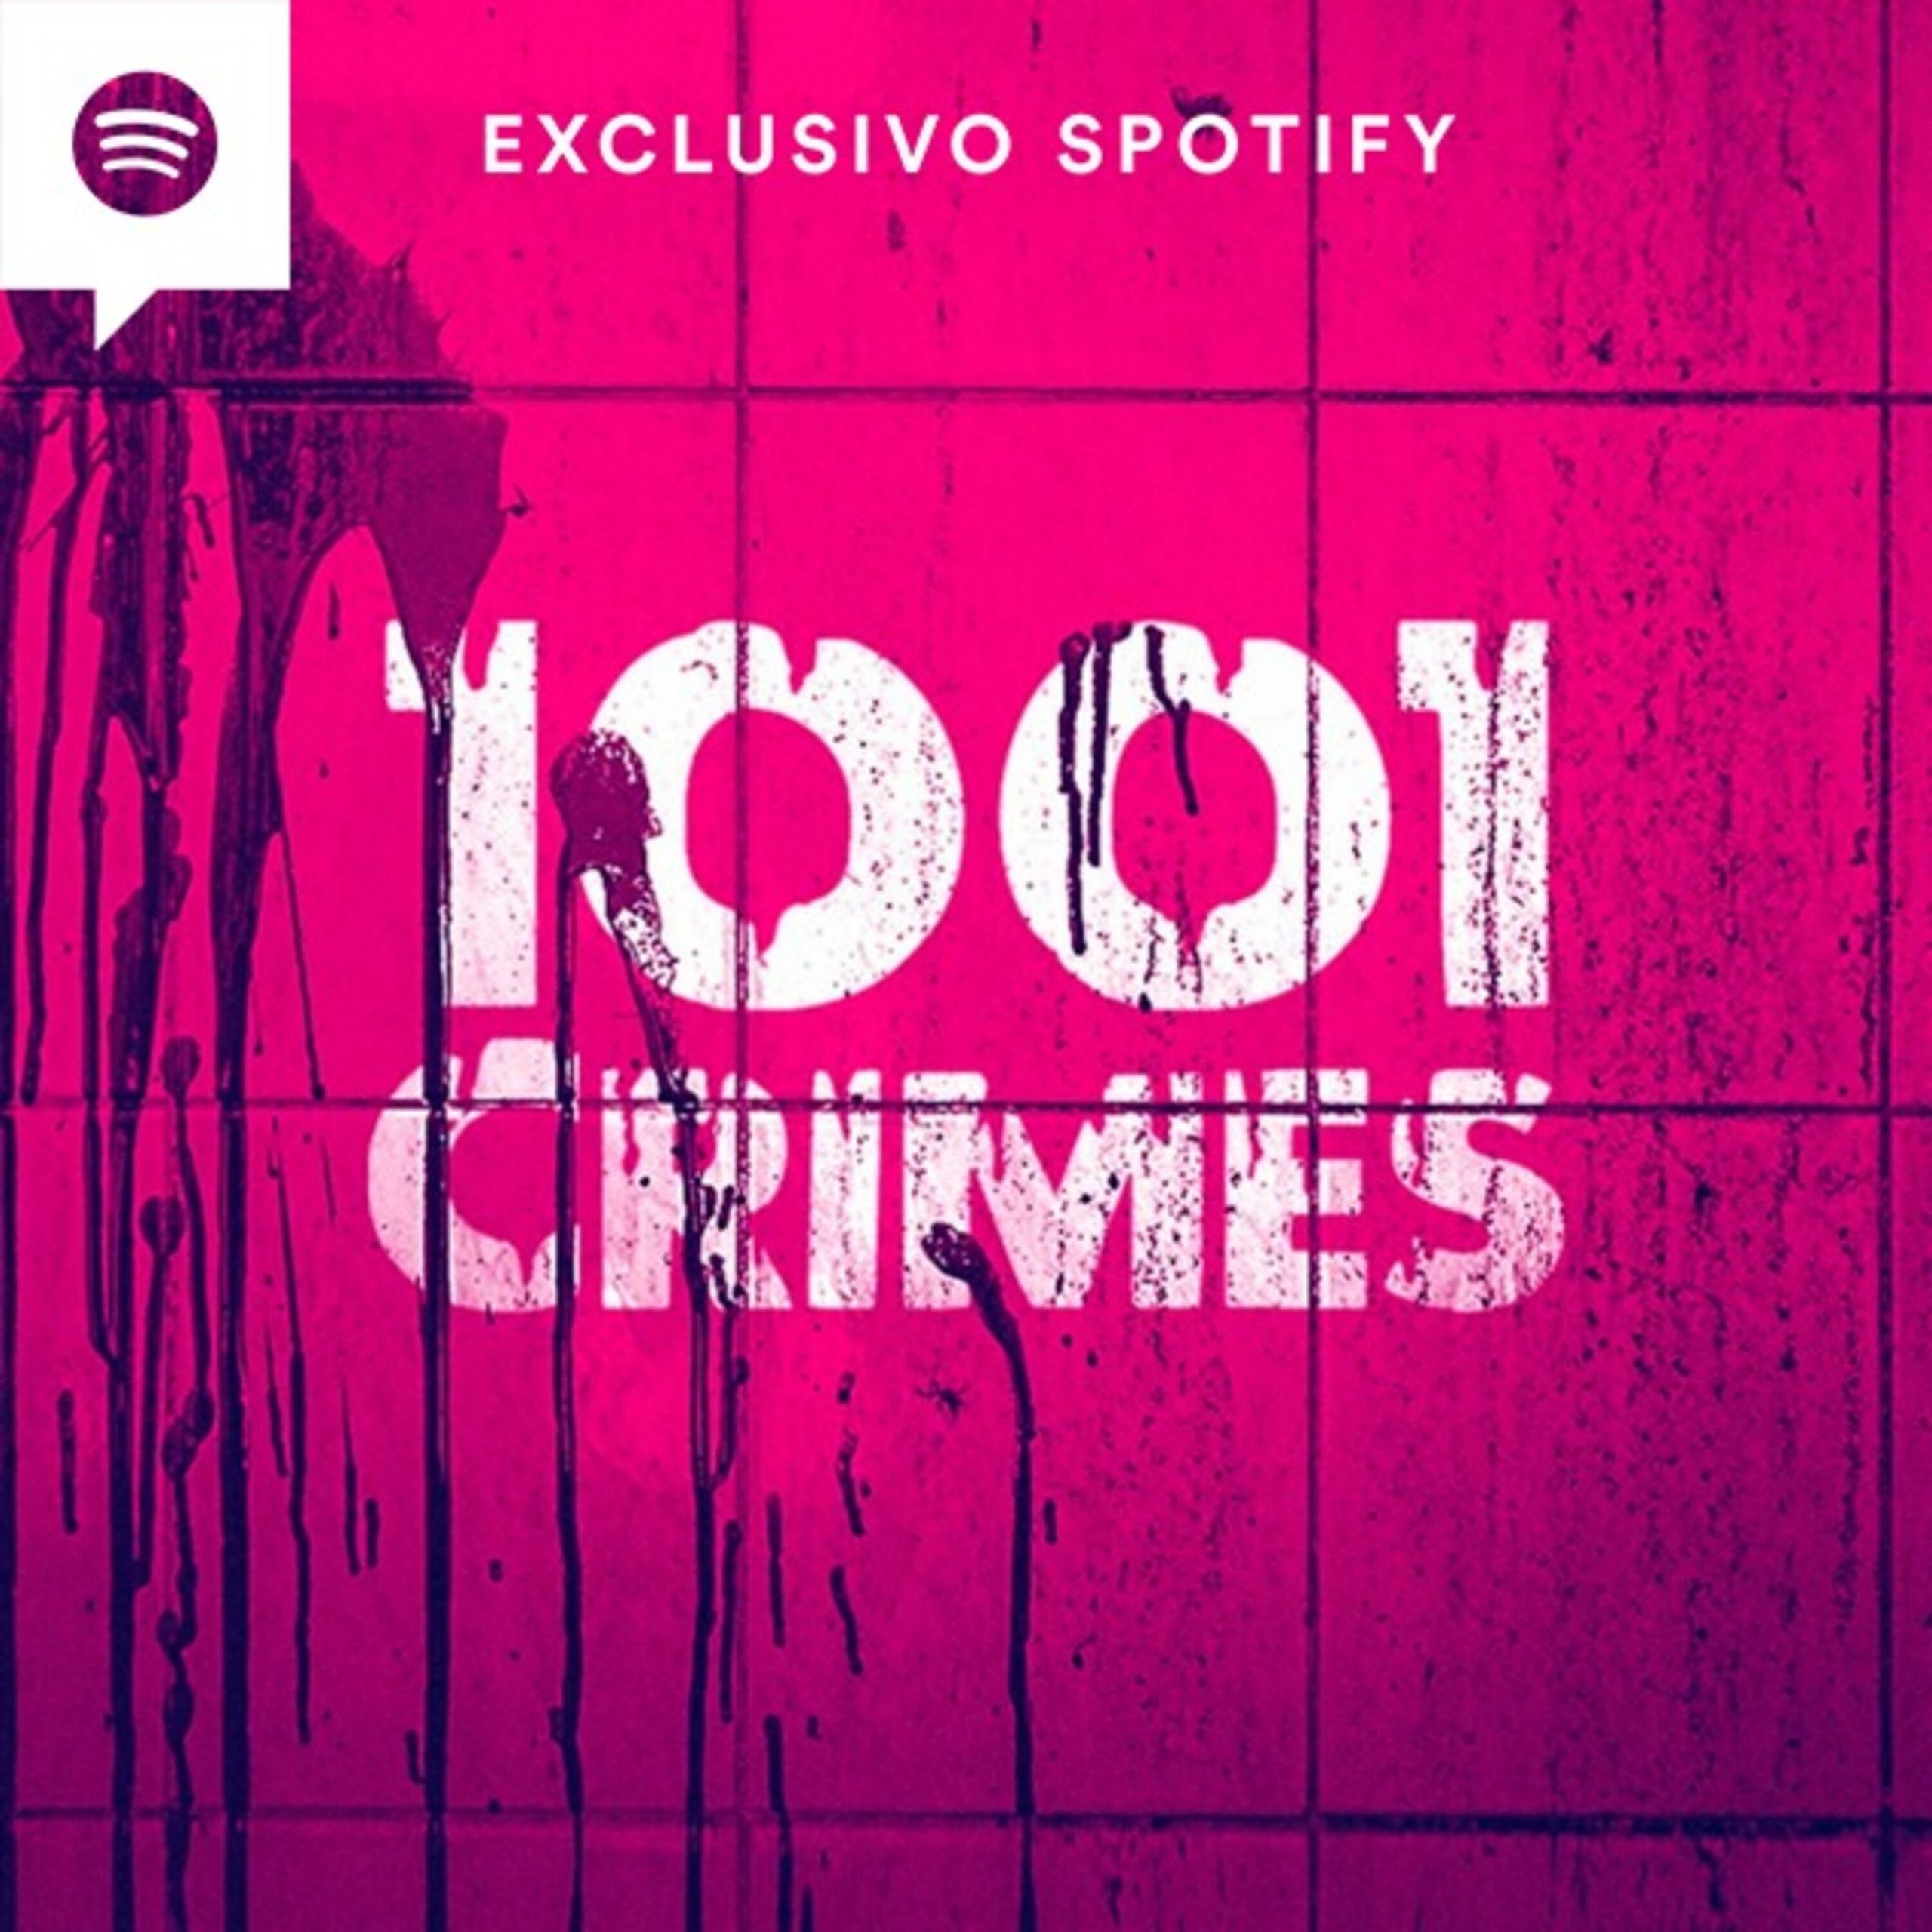 Capa do 1001 Crimes, um dos principais podcasts de True Crime